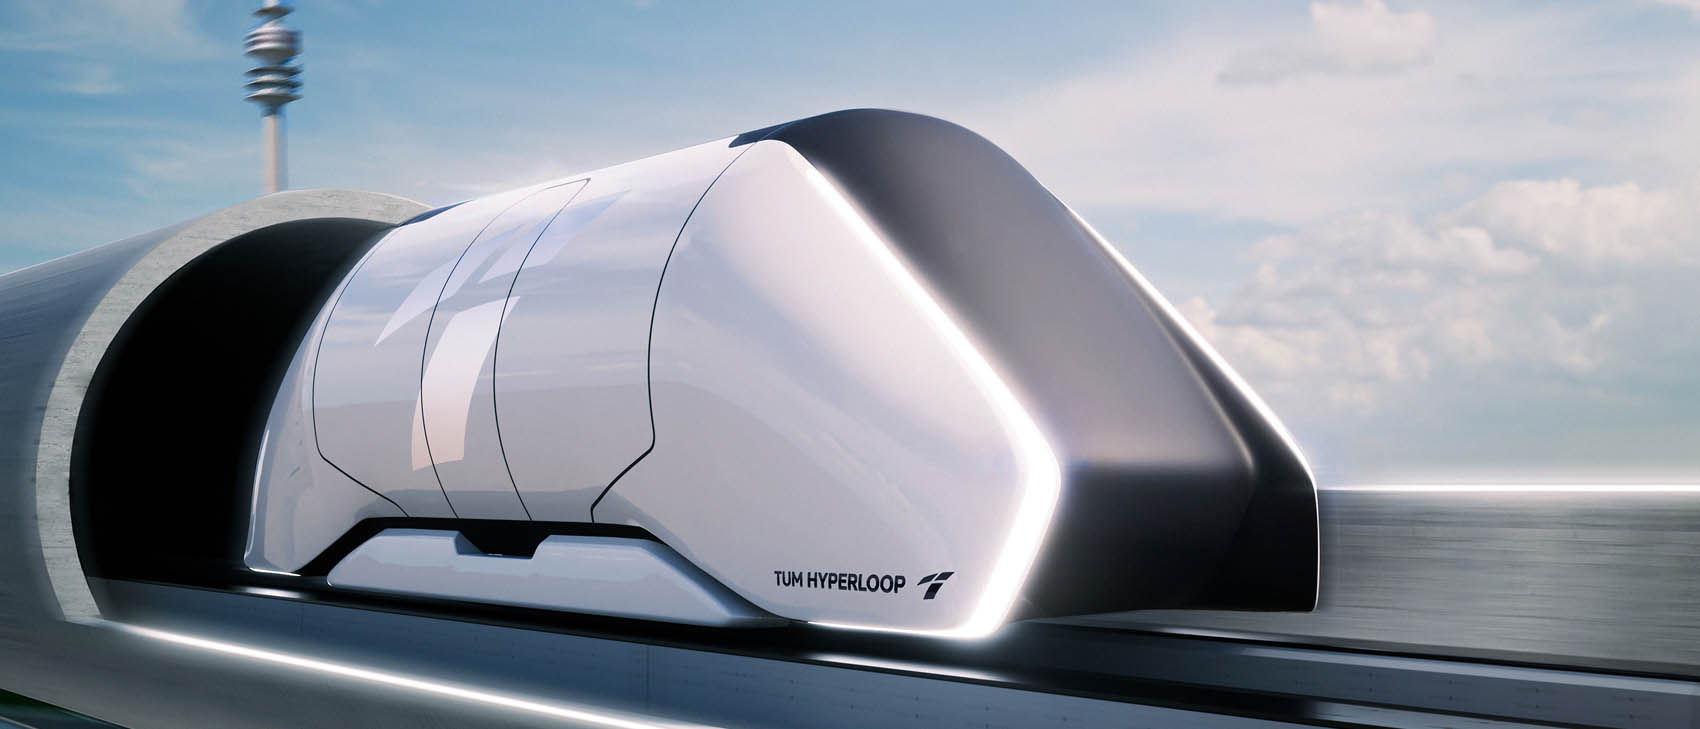 TUM Hyperloop